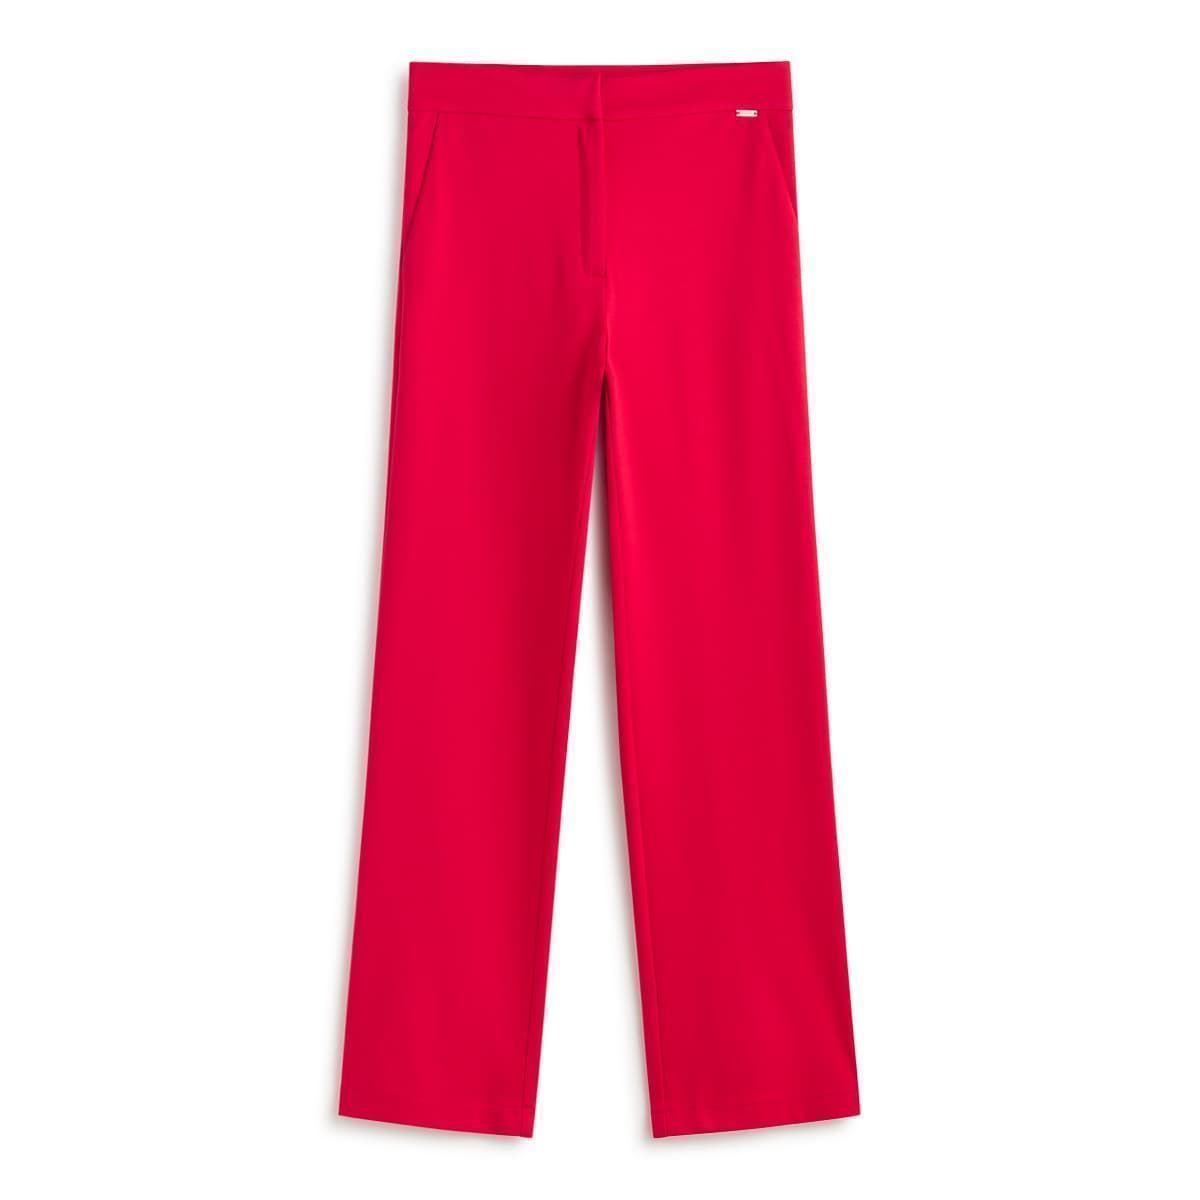 Pantalón rojo - Imagen 2